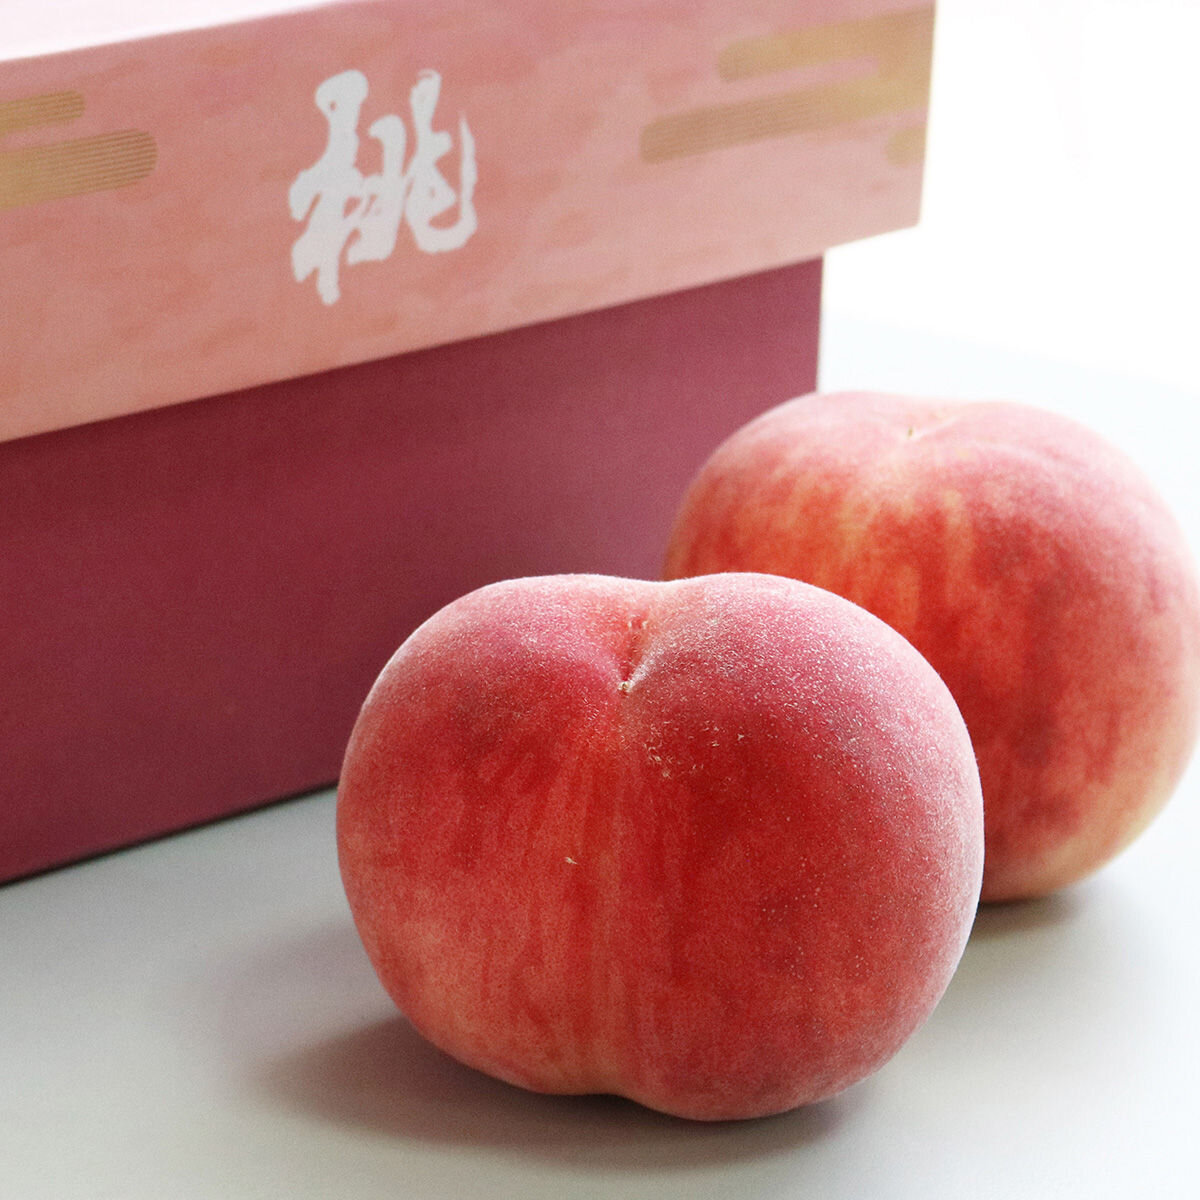 日本水蜜桃禮盒 1.8公斤 (6-7入)